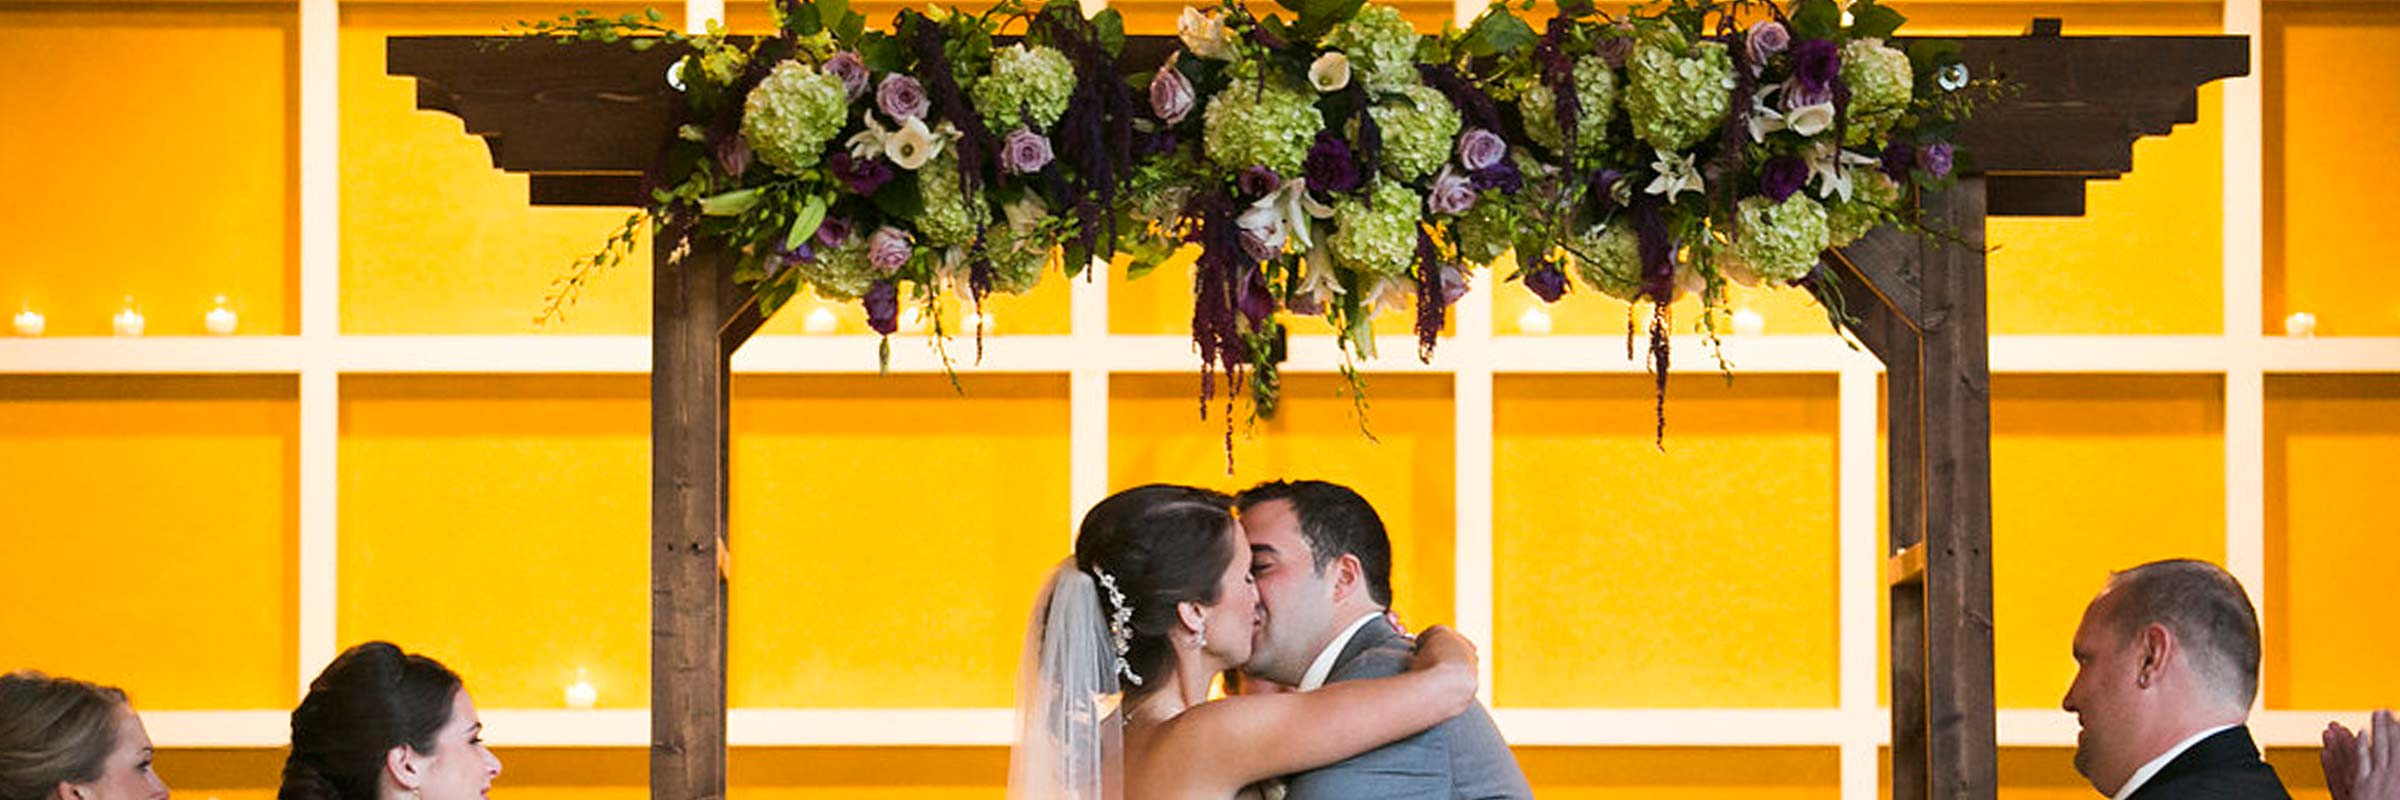 Wedding Arch Fresh Flower Kissing Bride Groom